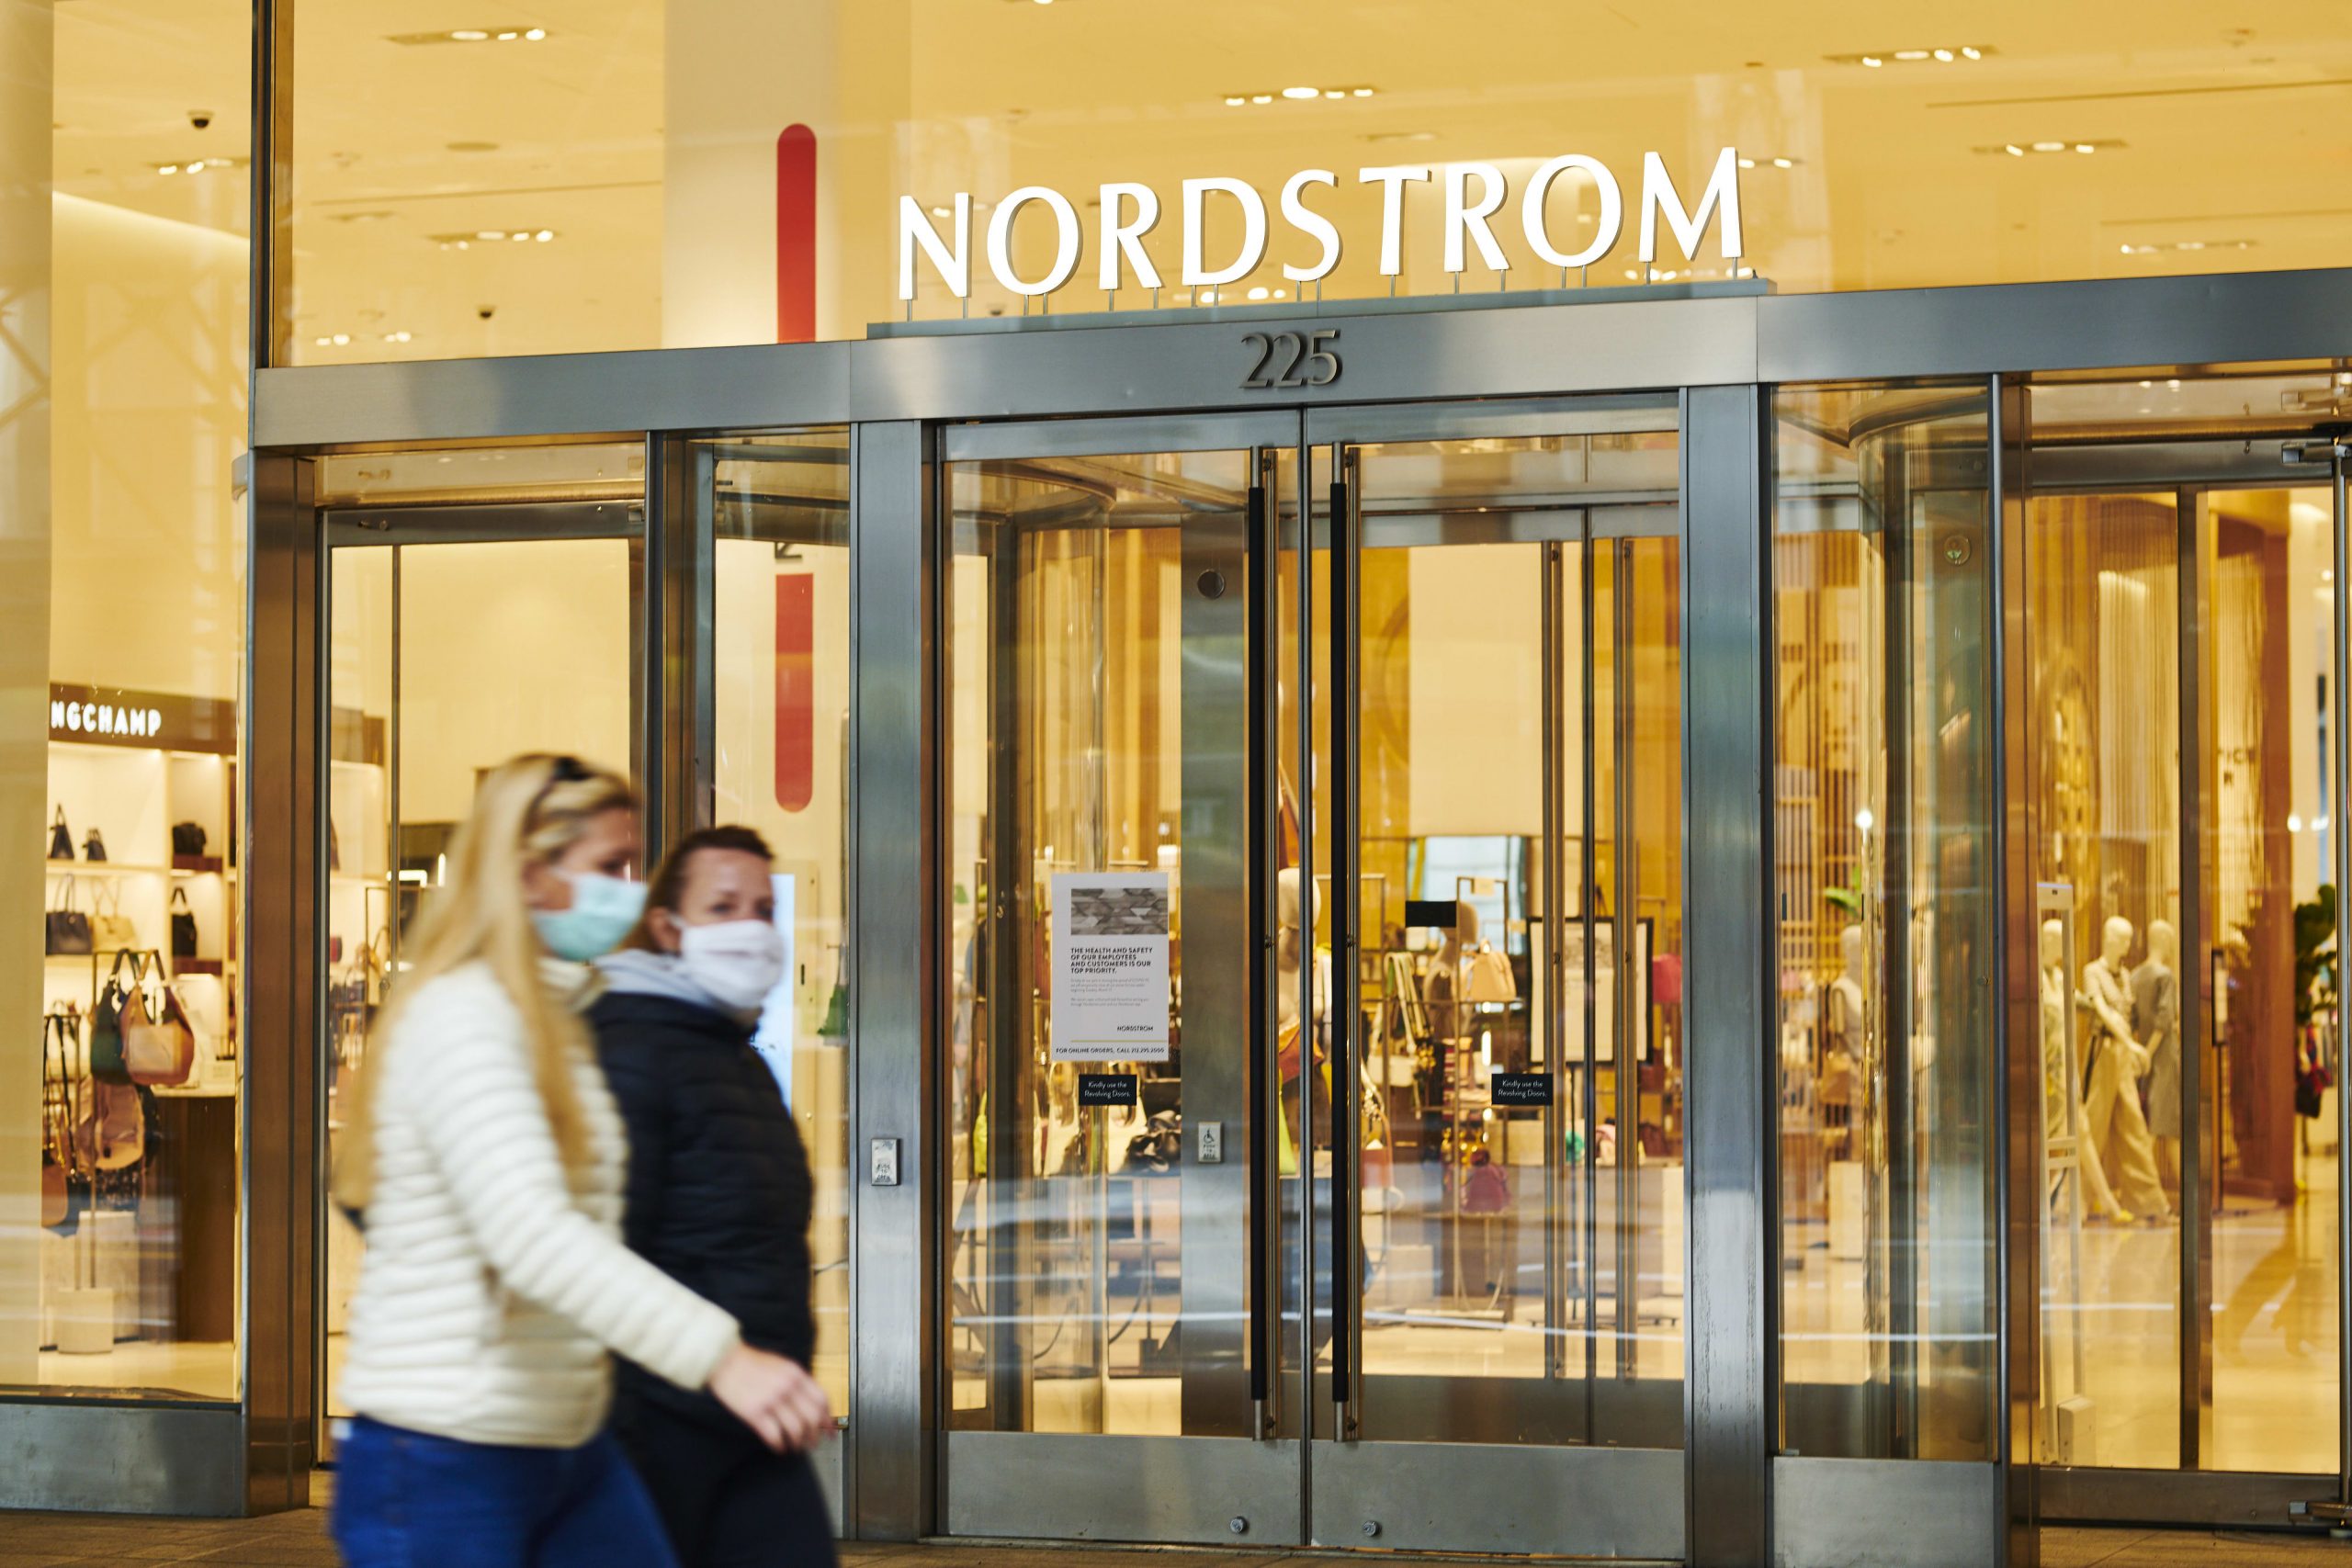 Vendas da Nordstrom caem 40% durante o primeiro trimestre fiscal -  Mercado&Consumo